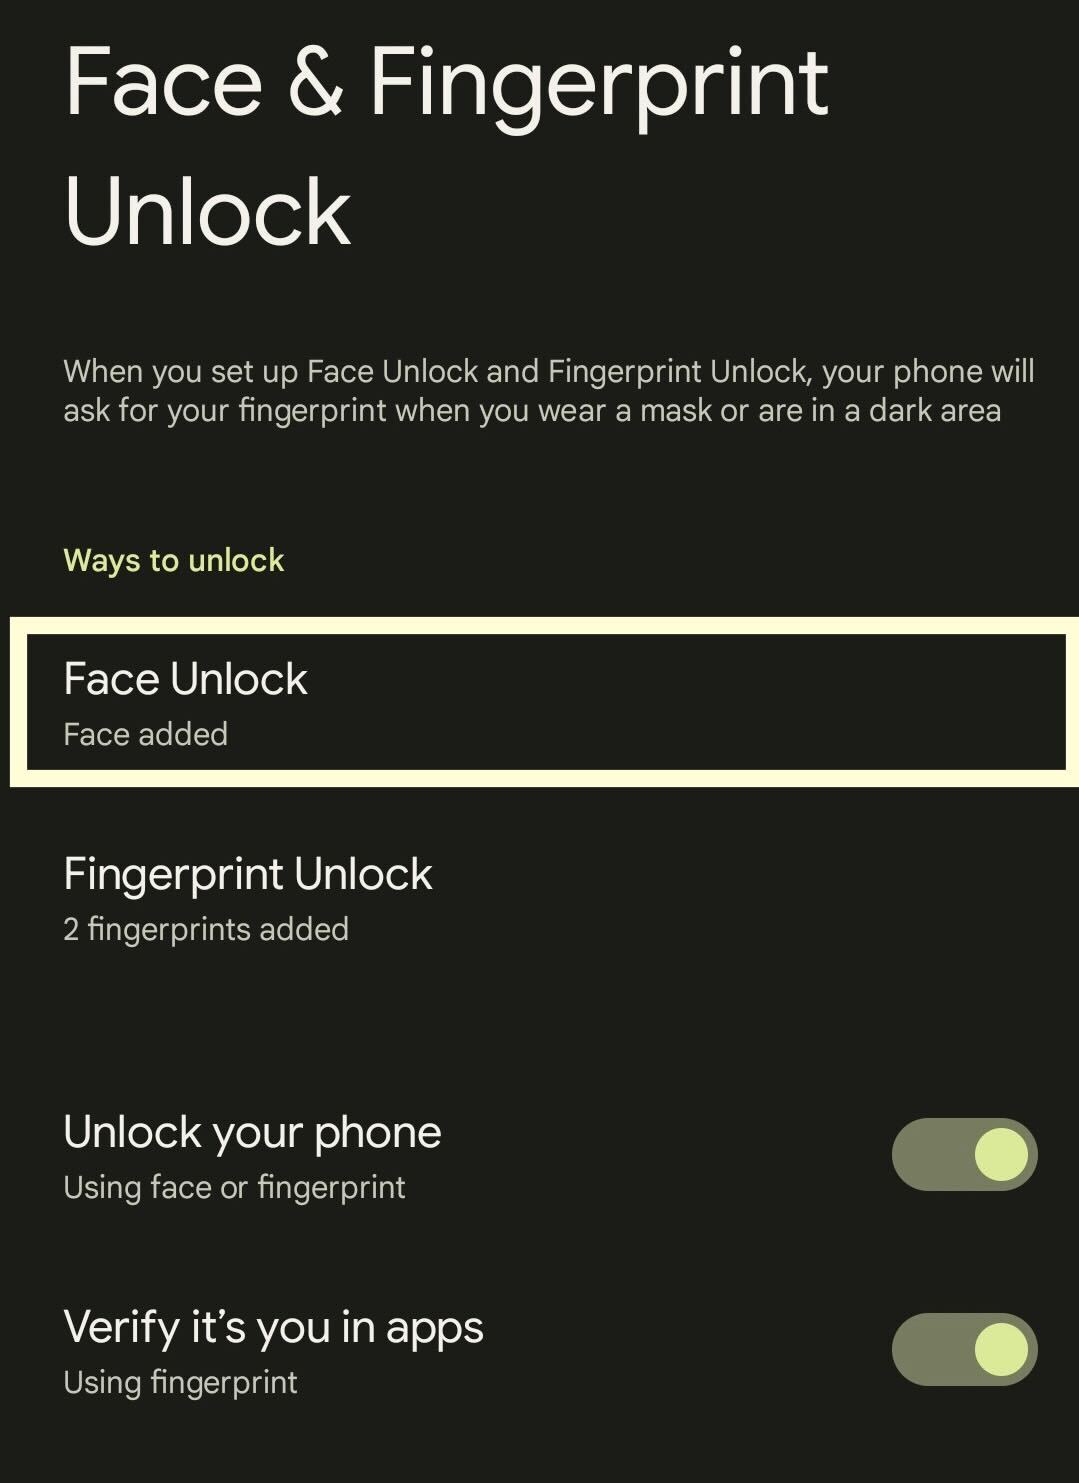 Click on Face Unlock